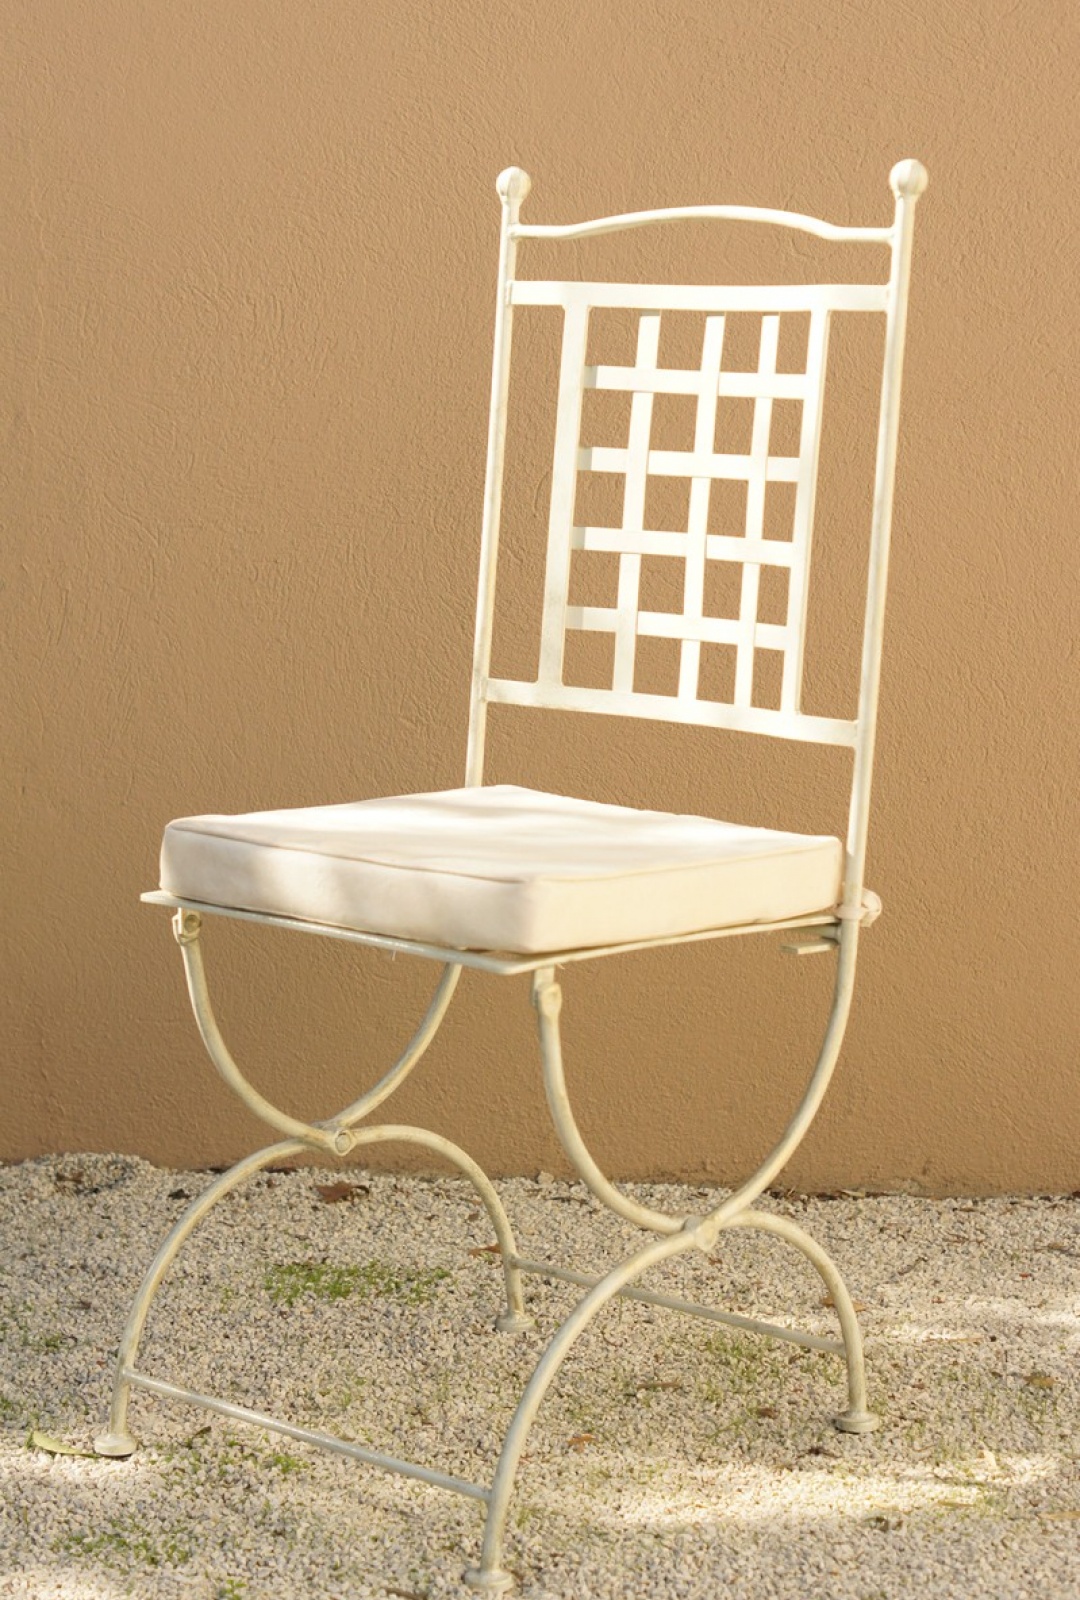 Chaise en fer forgé provençale blanche avec coussin